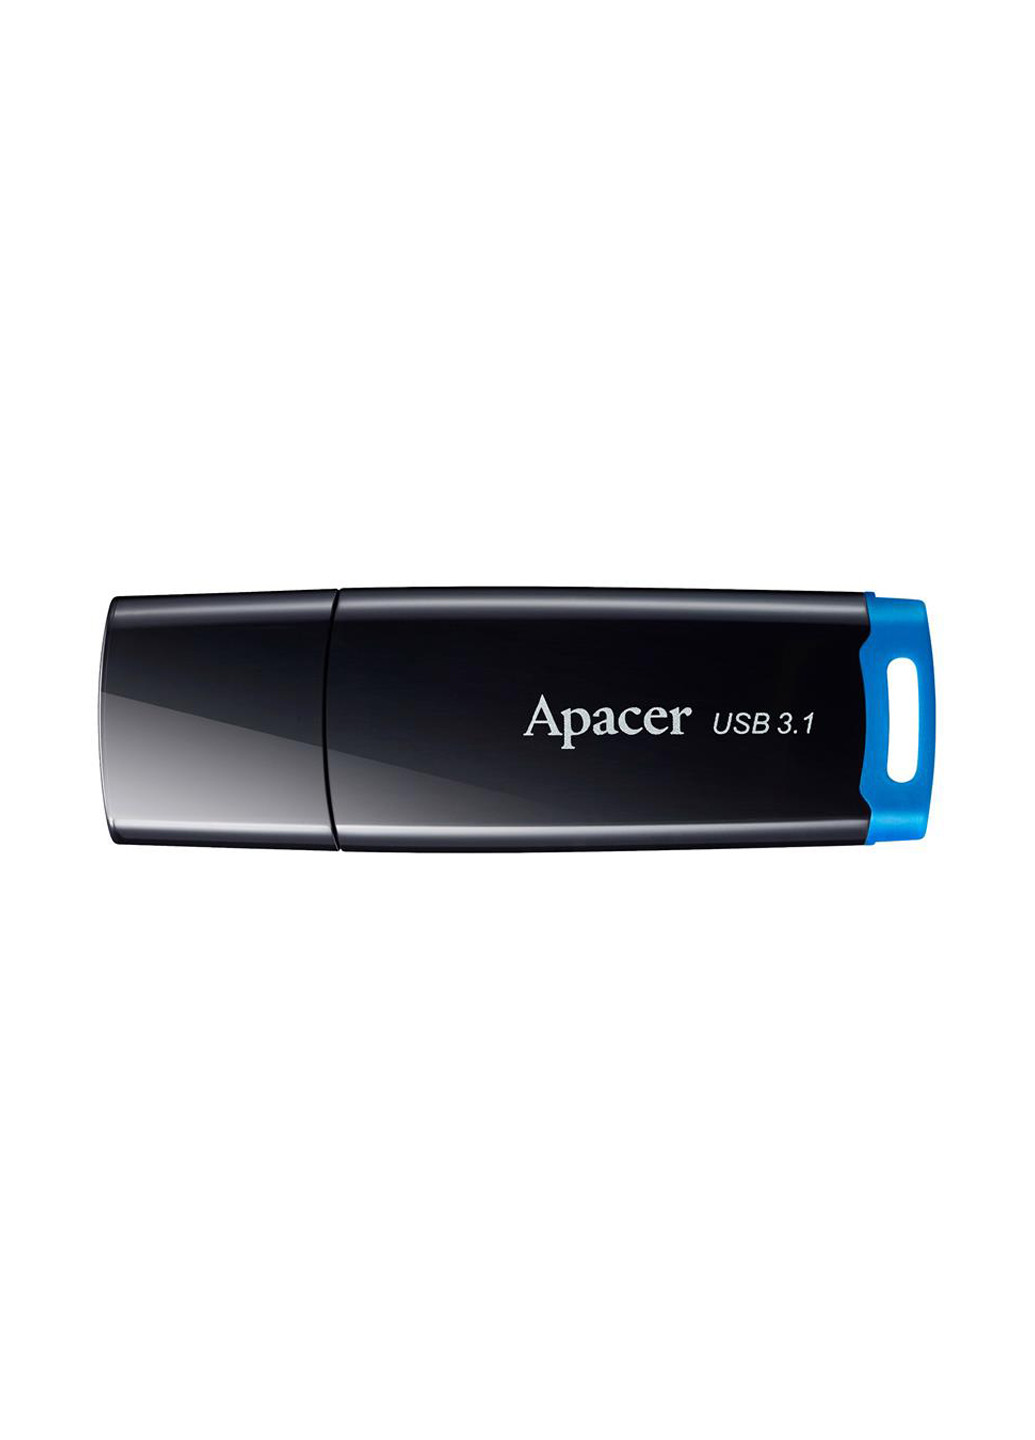 Флеш пам'ять USB AH359 64GB USB 3.1 Black (AP64GAH359U-1) Apacer флеш память usb apacer ah359 64gb usb 3.1 black (ap64gah359u-1) (135165432)